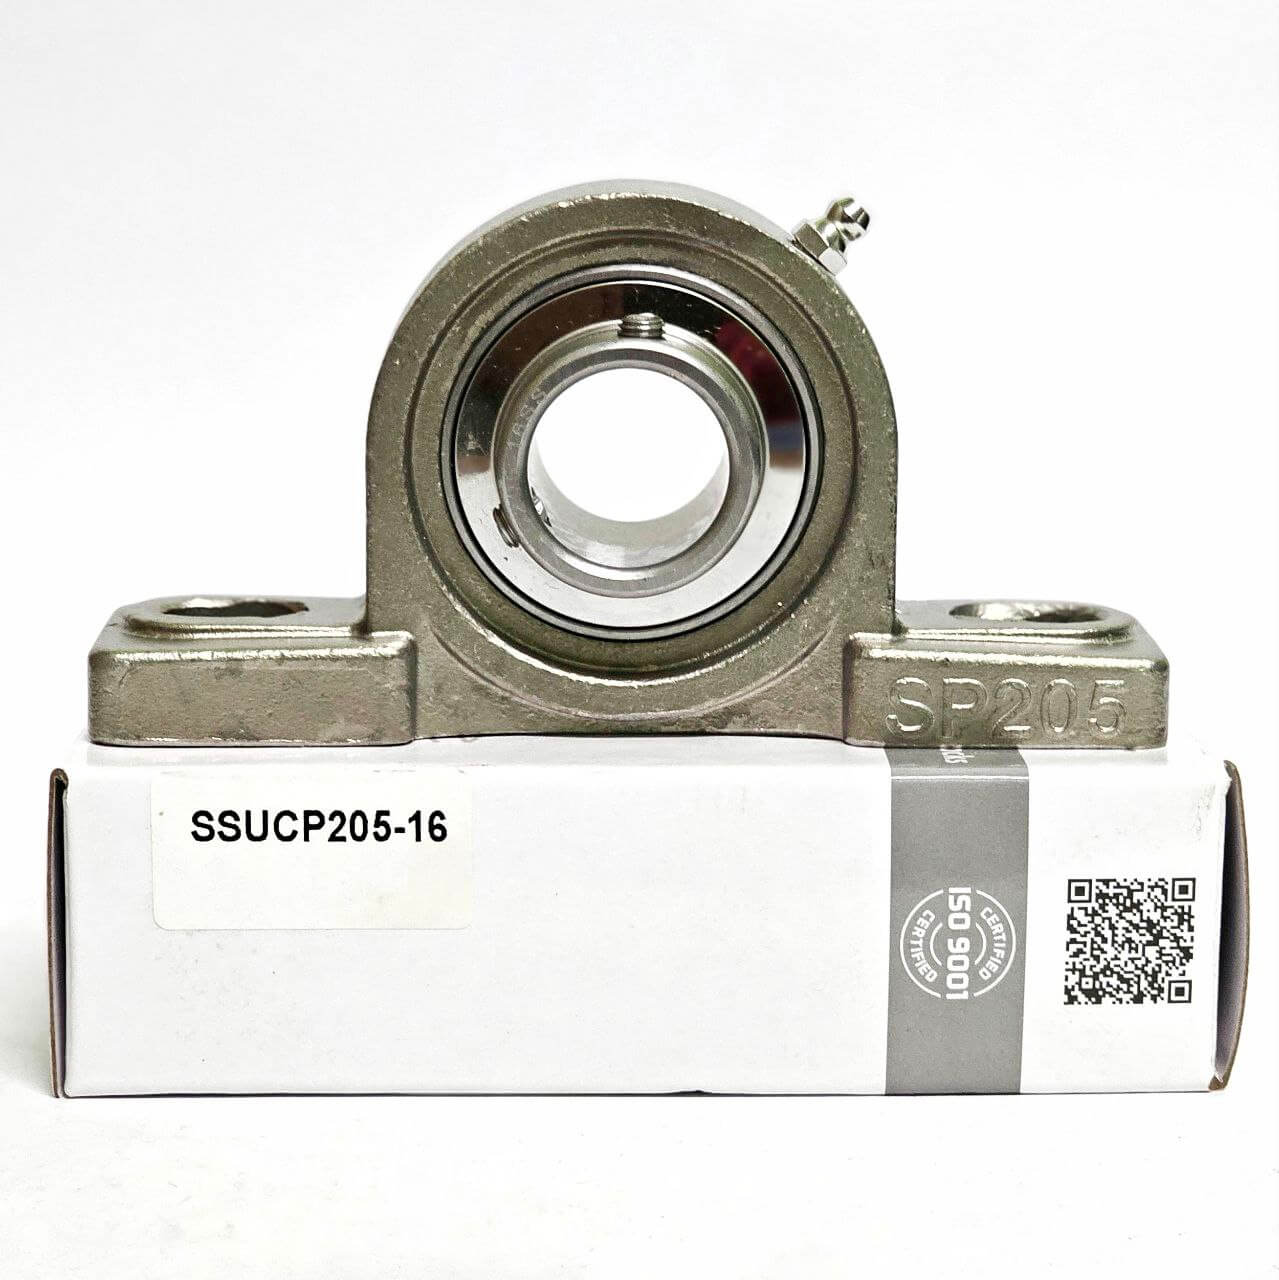 Soporte inoxidable SUCP205-16 para eje de 1" (25,4mm) con housing SP205-1